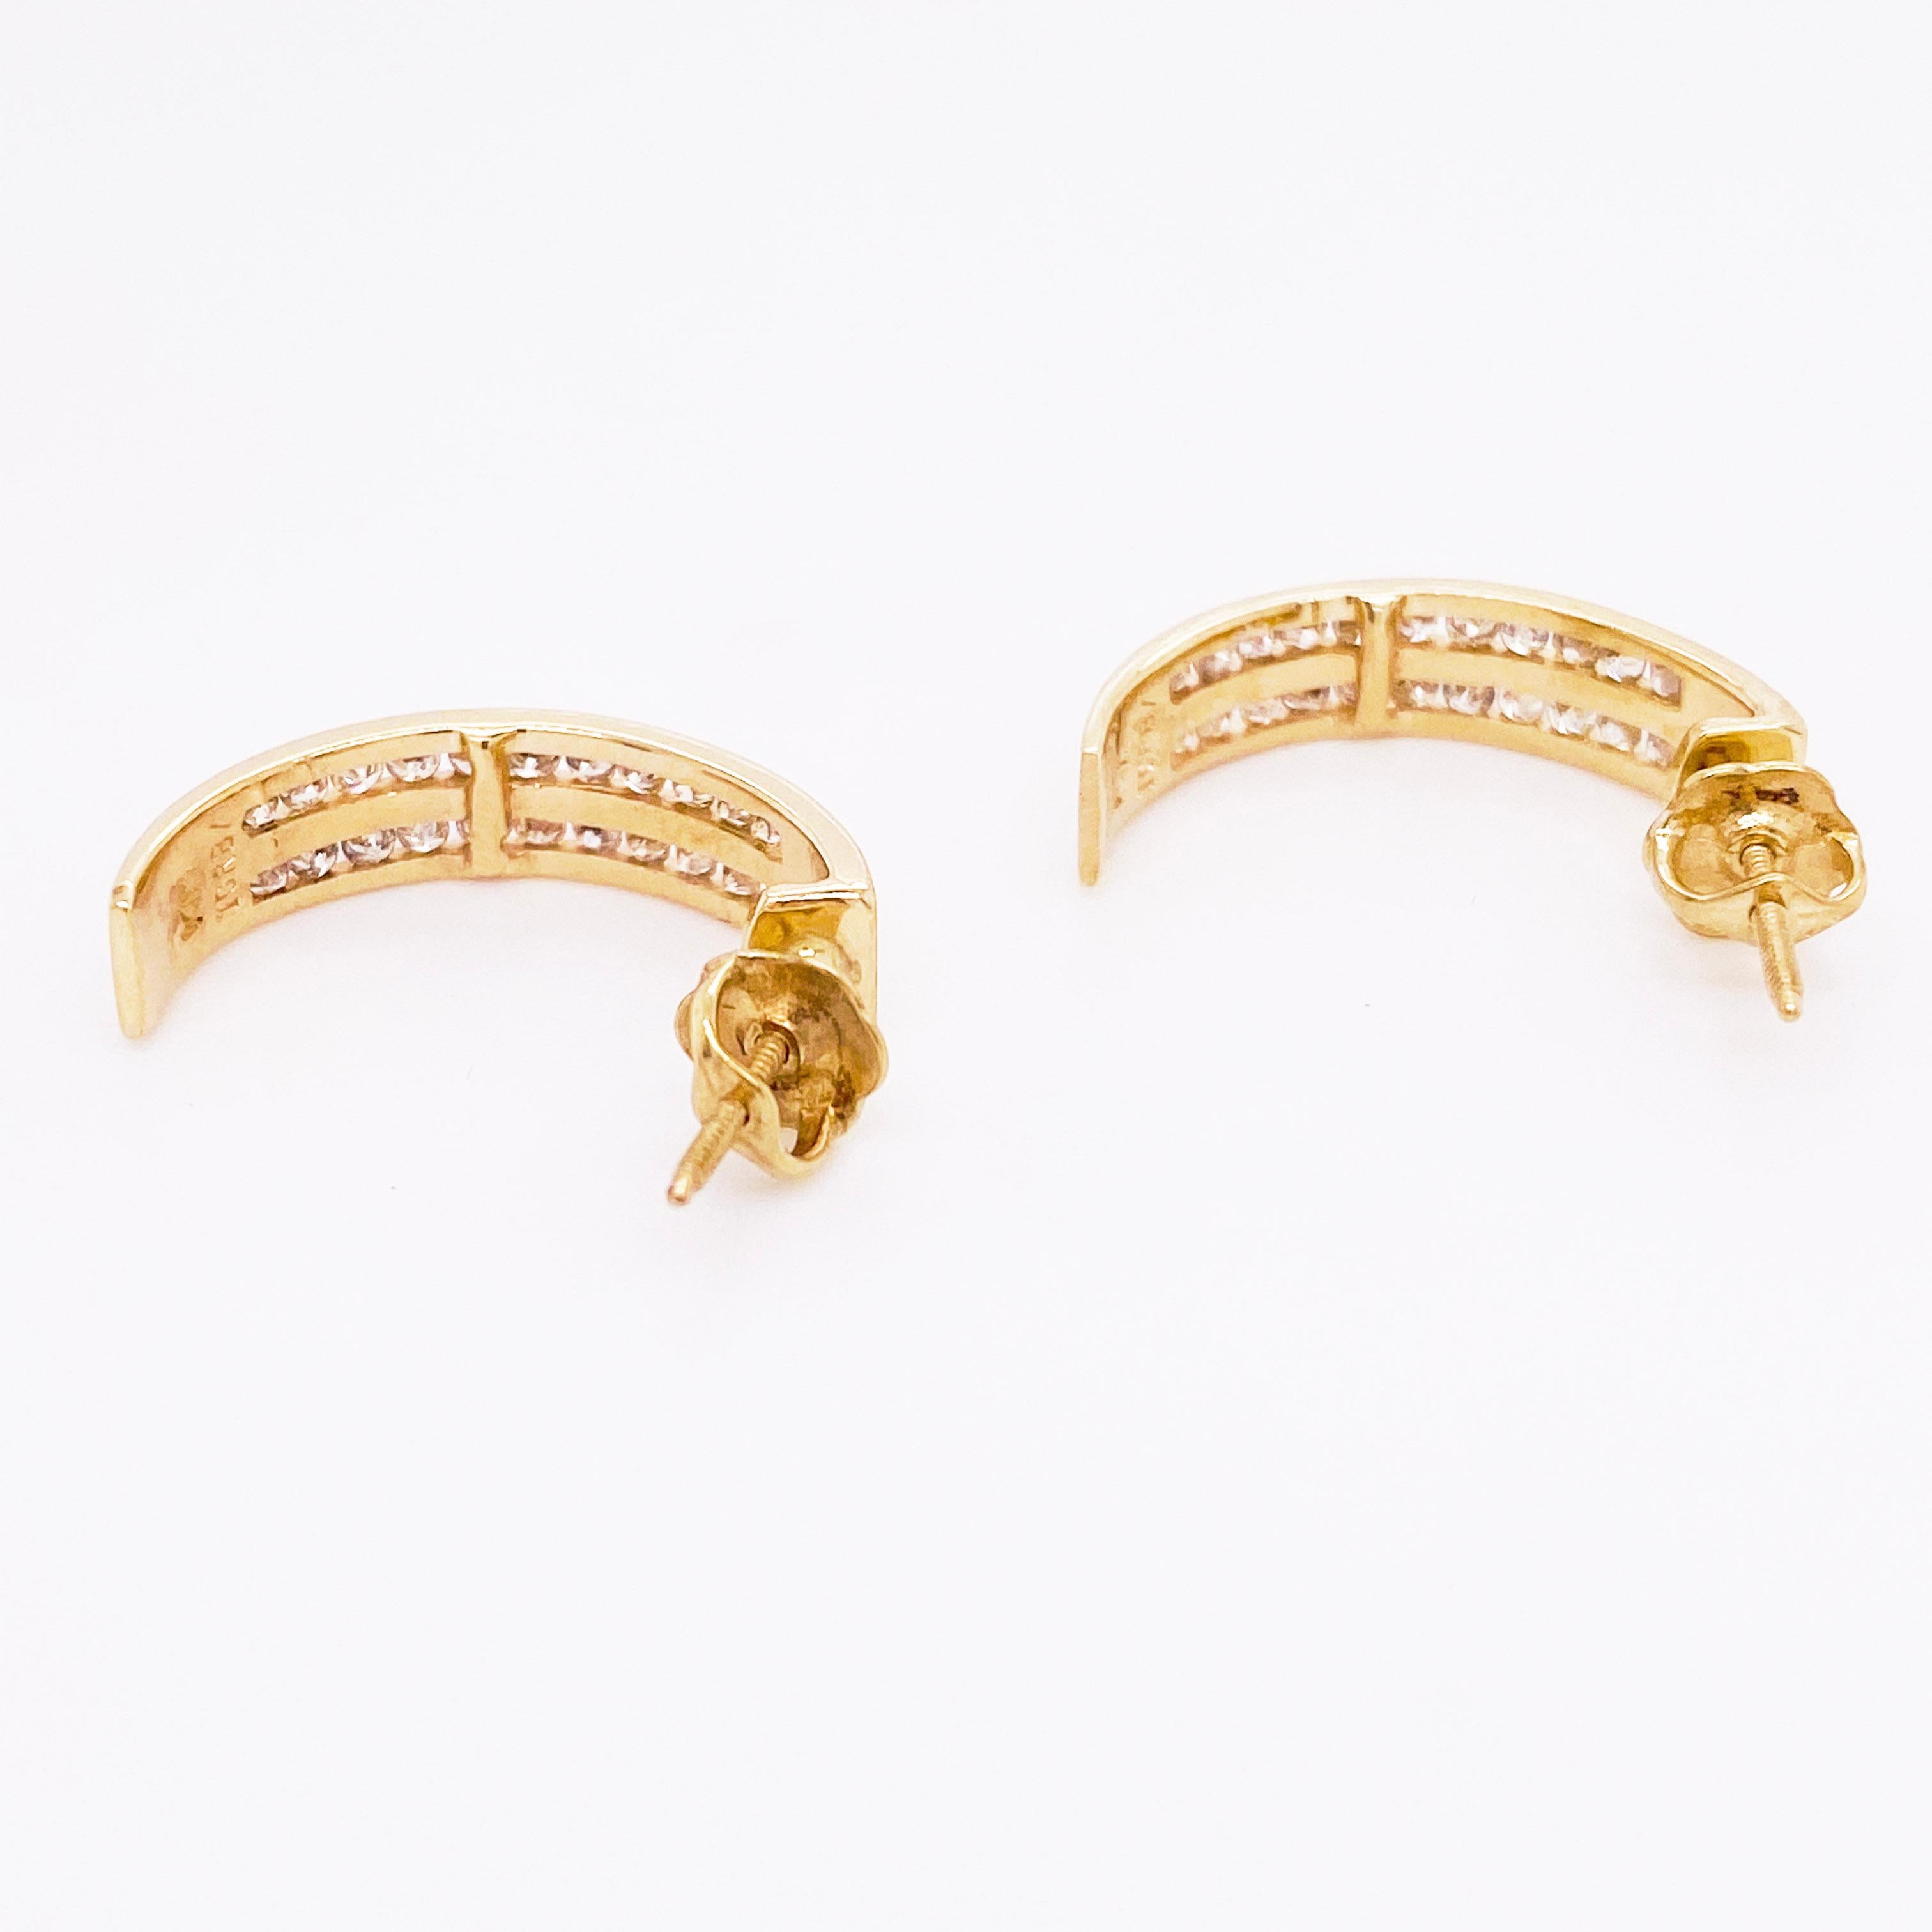 Modern Gold Diamond Earrings, 14 Karat Gold, J Hook Earrings, 48 Diamonds, 1/2 Carat For Sale